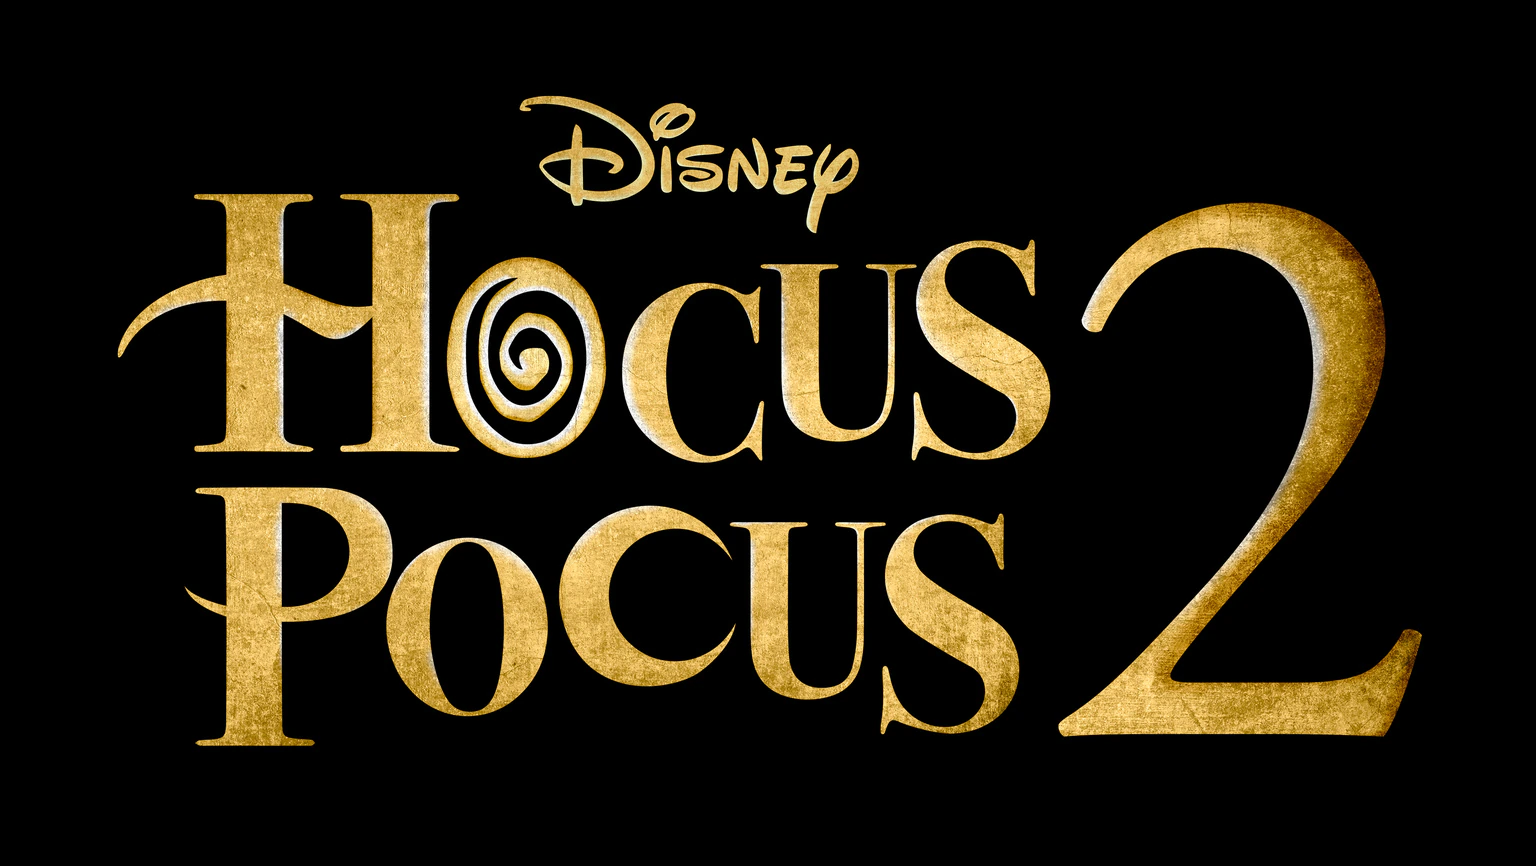 hocus pocus 2 logo trailer